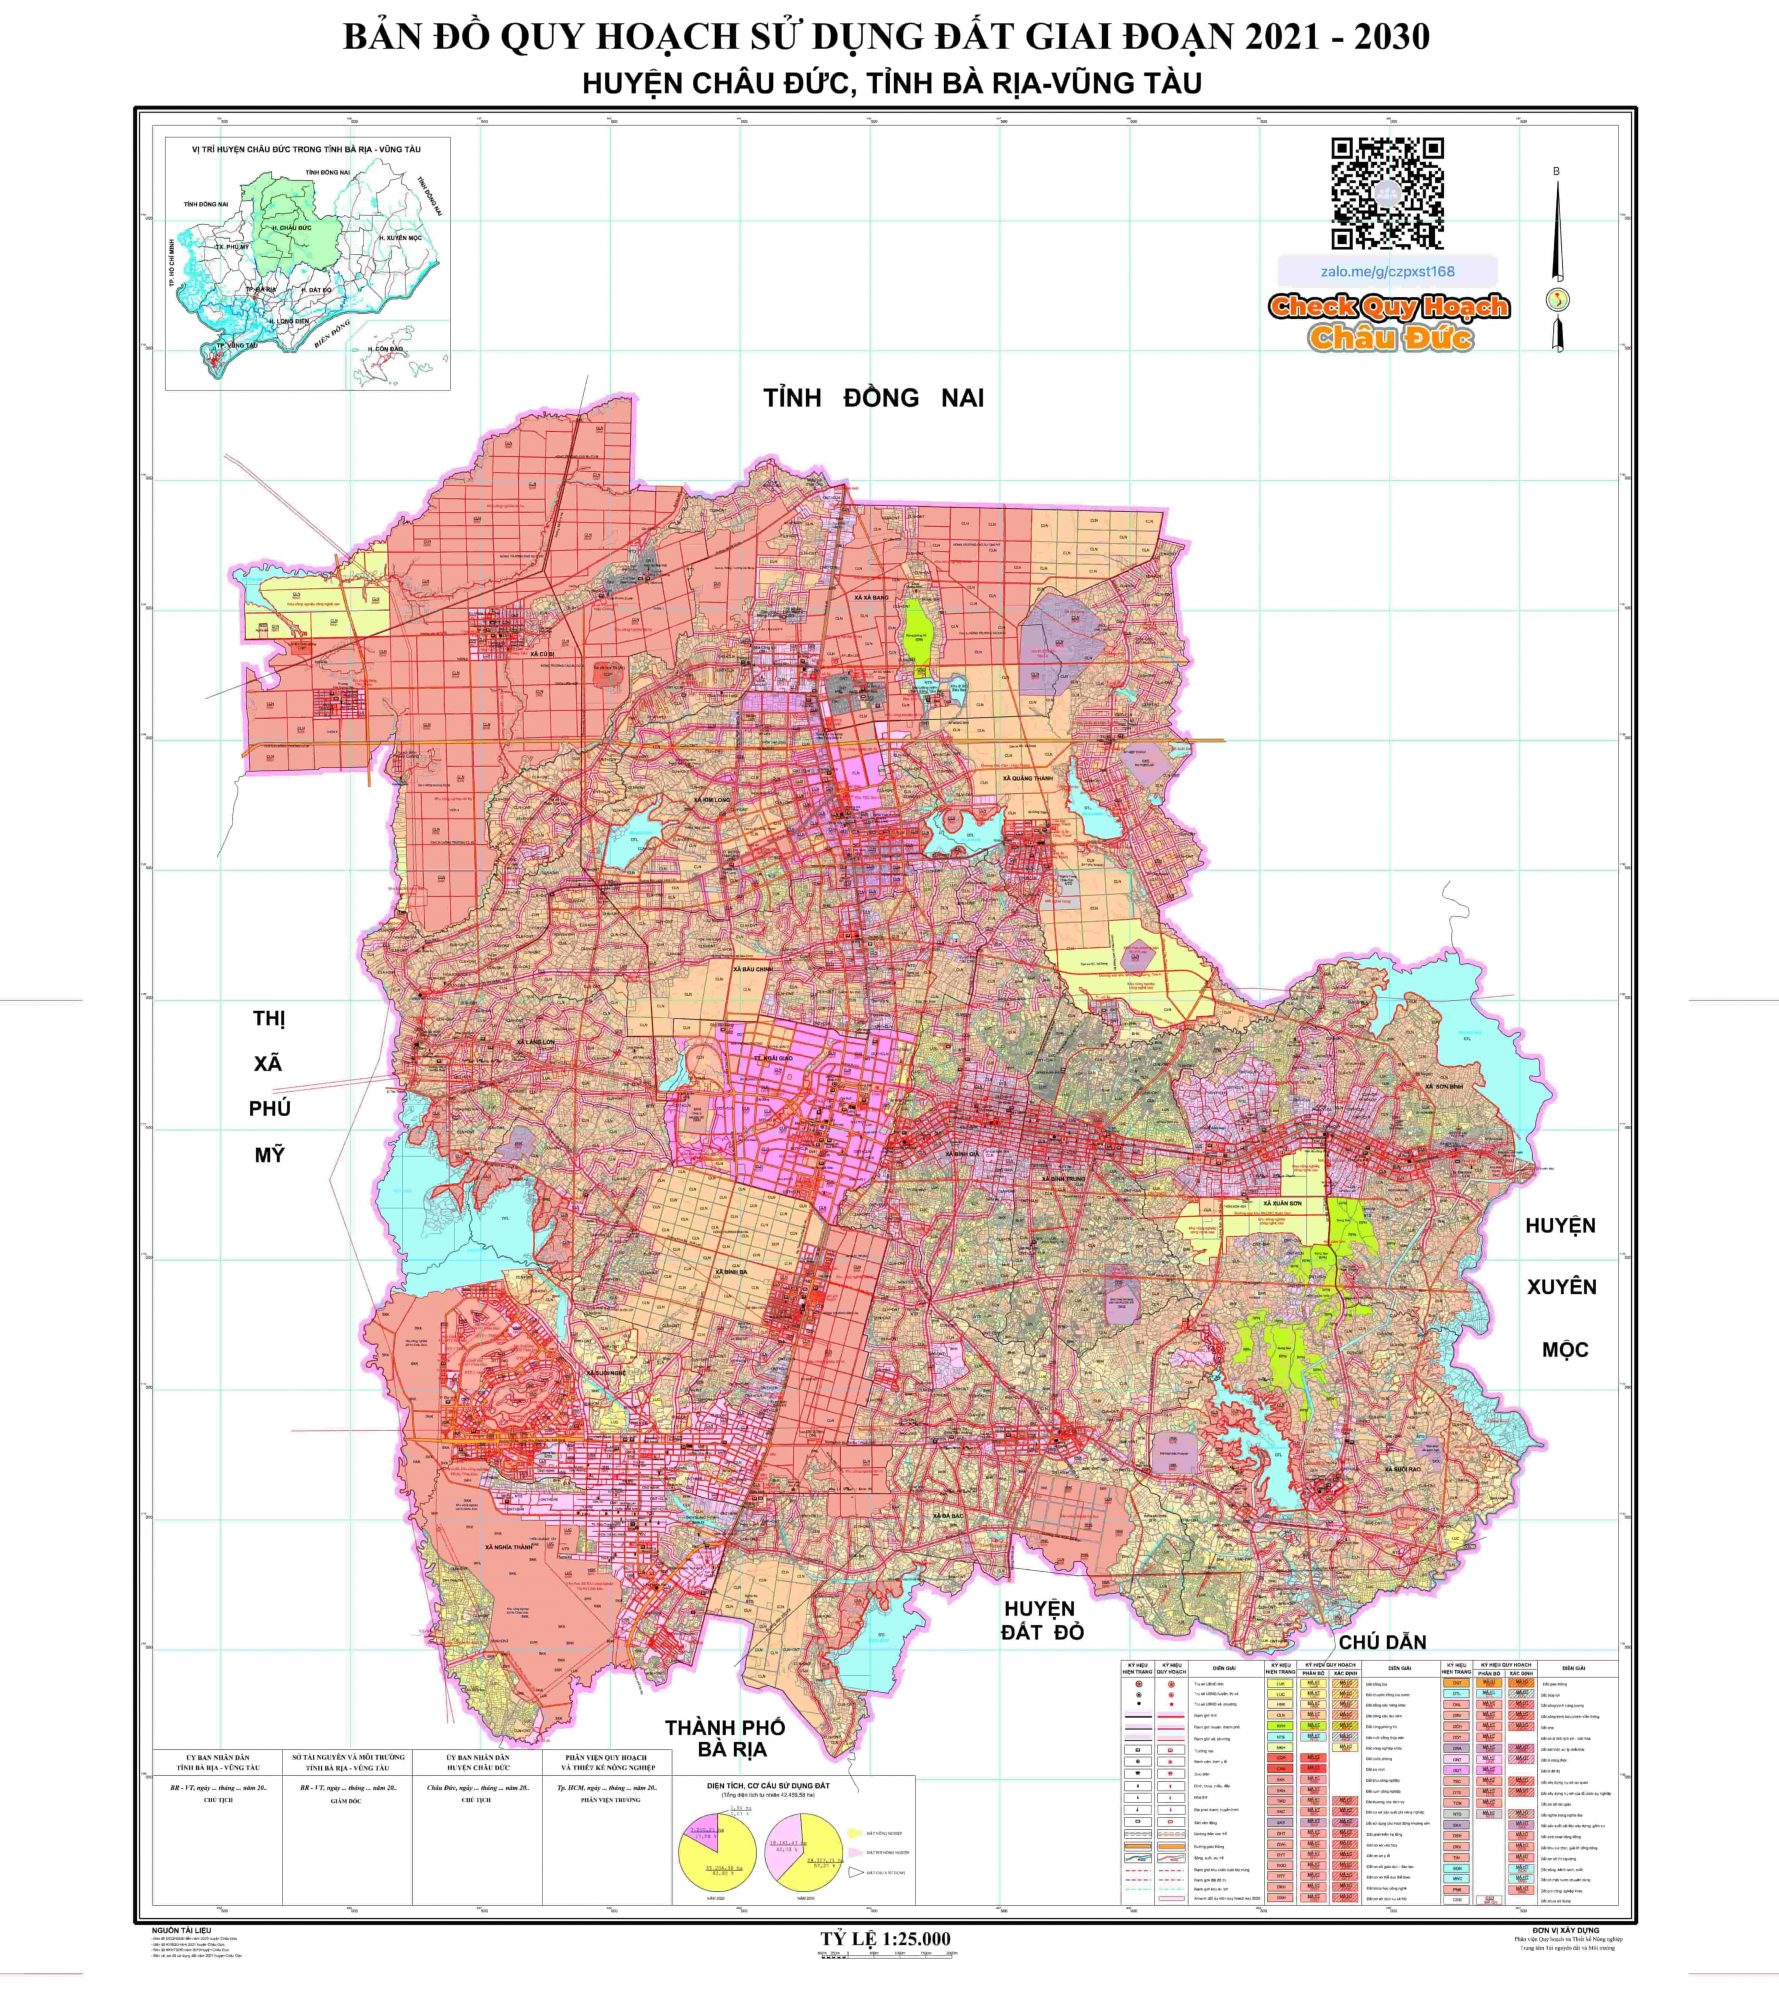 Với sự ra đời của bản đồ quy hoạch huyện Châu Đức năm 2024, việc tìm kiếm các địa điểm tuyệt vời của Đức Cơ trở nên đơn giản hơn bao giờ hết. Tính năng tìm kiếm nhanh và những vùng đất trống trong huyện được đánh dấu rõ ràng giúp cho người dùng dễ dàng tiếp cận với các thông tin quan trọng về địa lý. Hãy xem hình ảnh để trải nghiệm điều này!